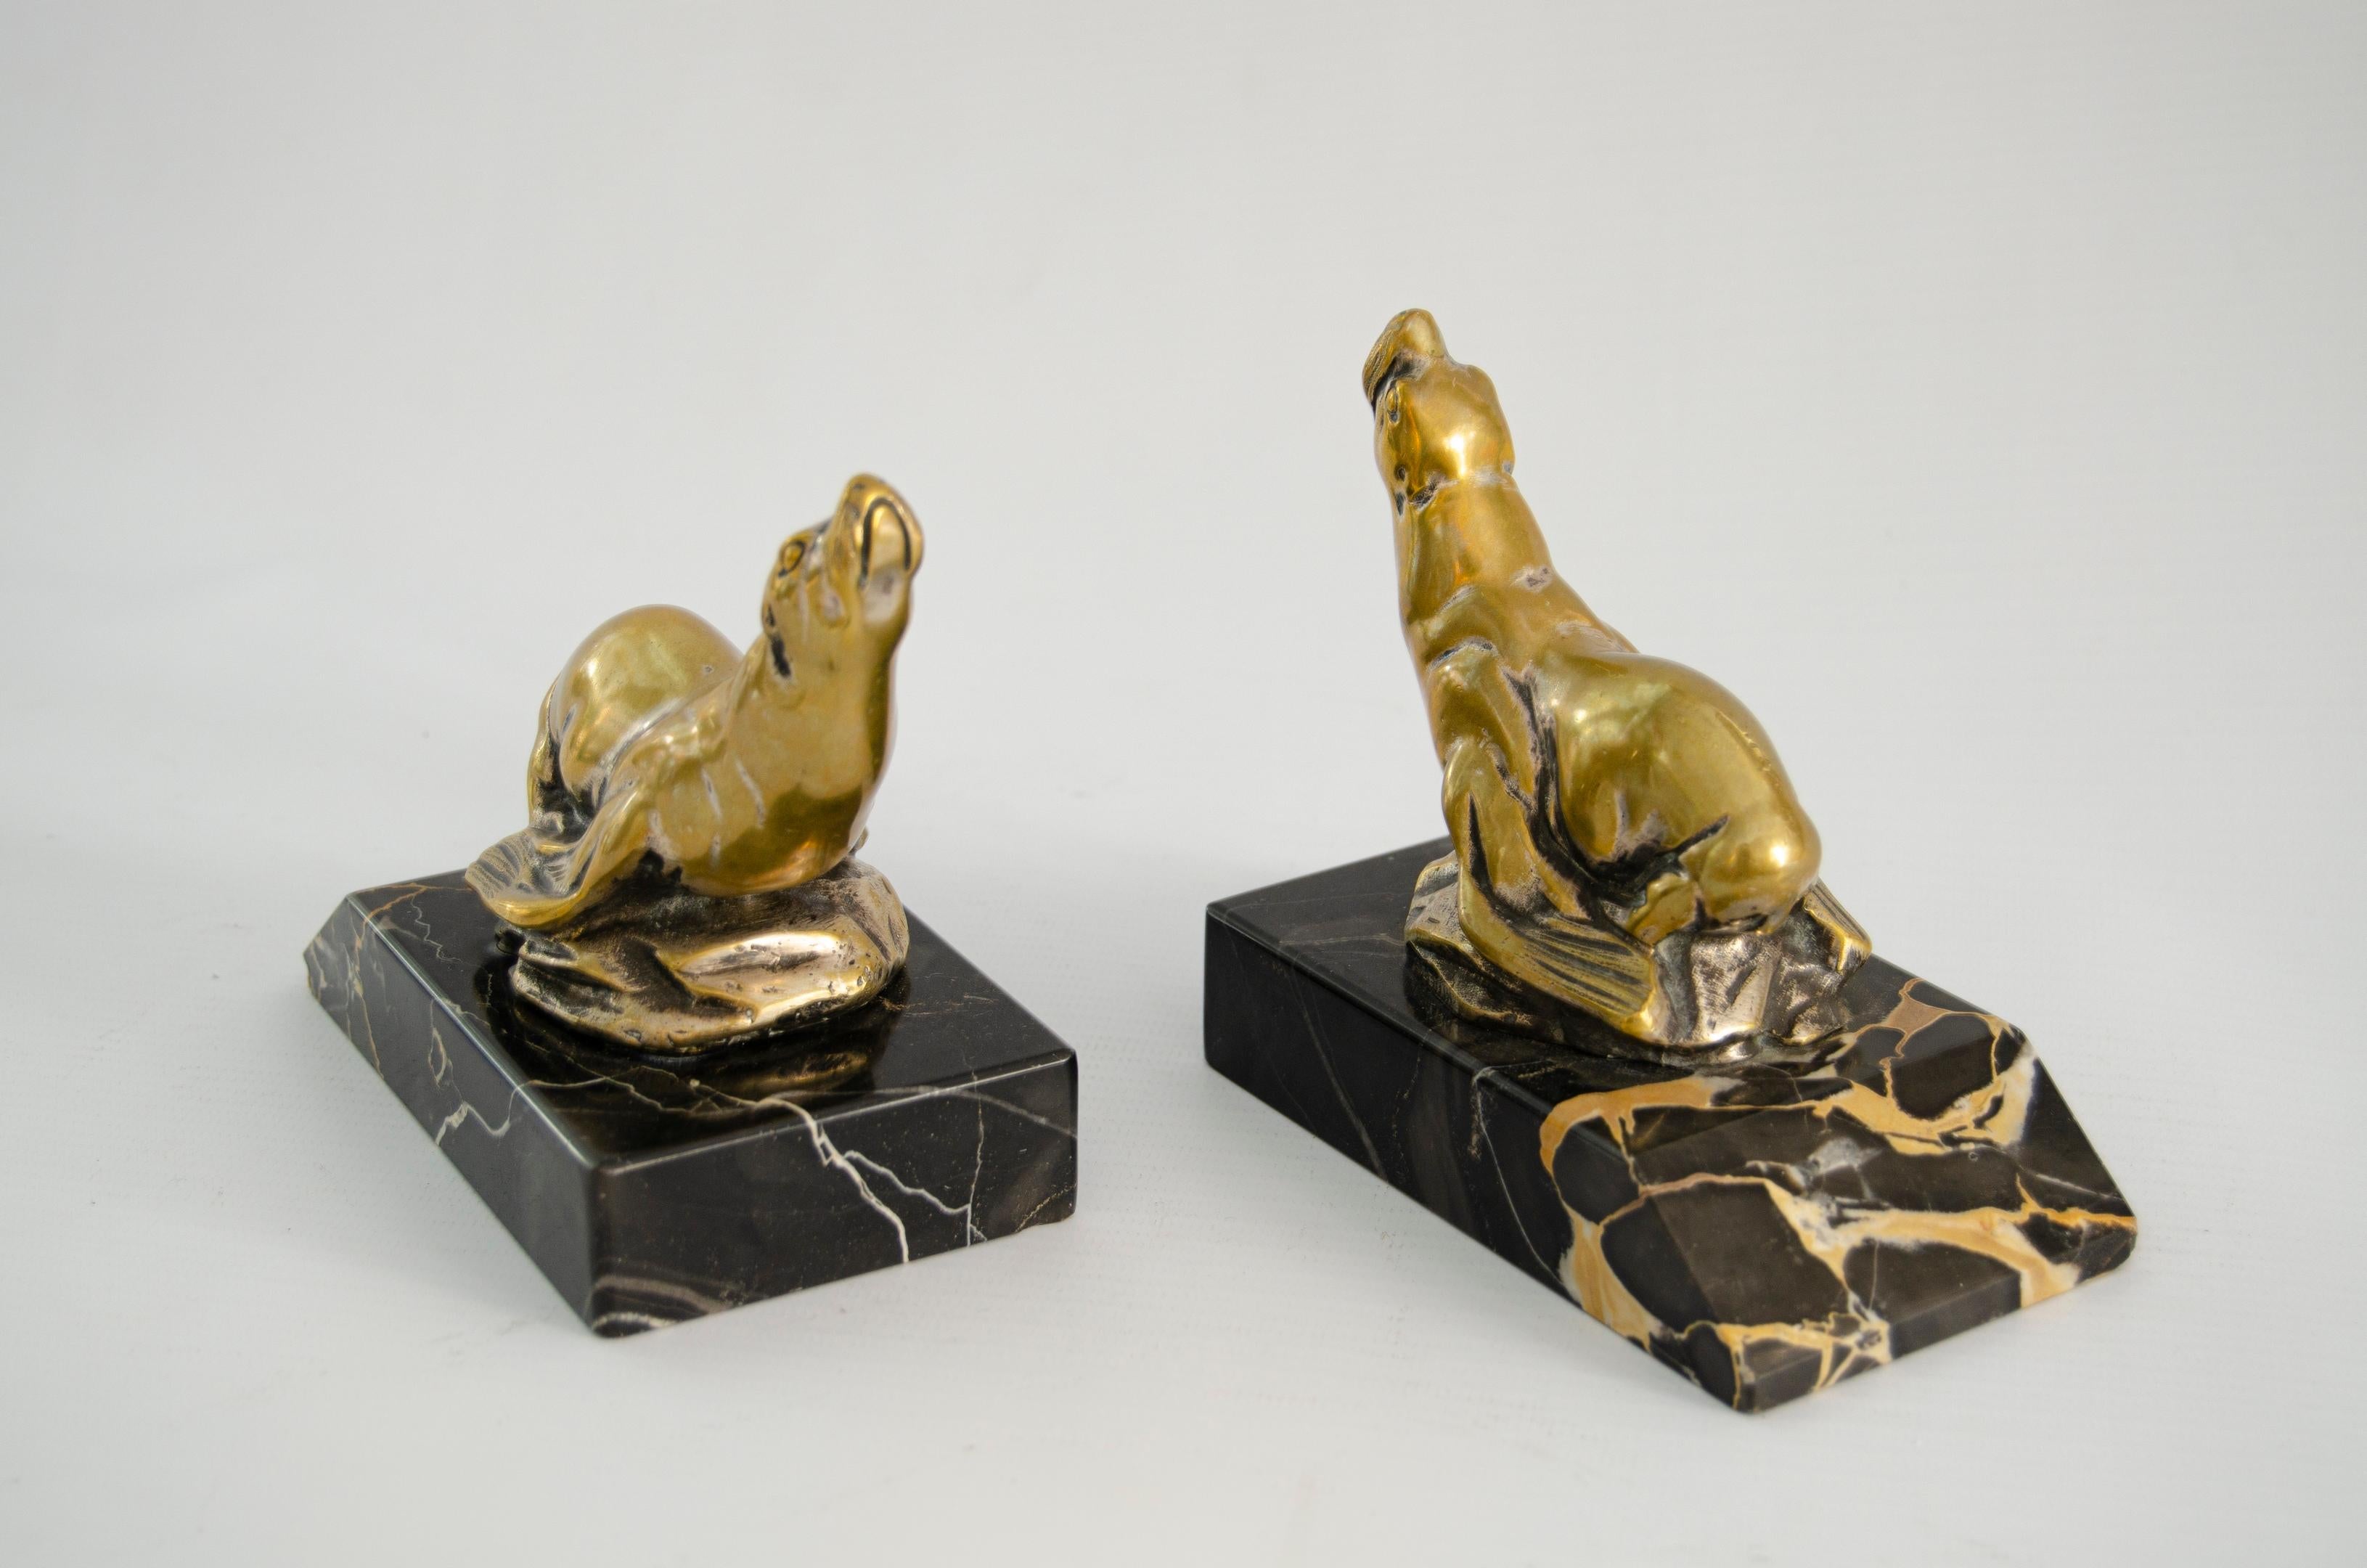 Siegelfigur bookens
Gezeichnet ((M. Bertin))
bronze und Portoro-Marmor
Art Deco, Frankreich.